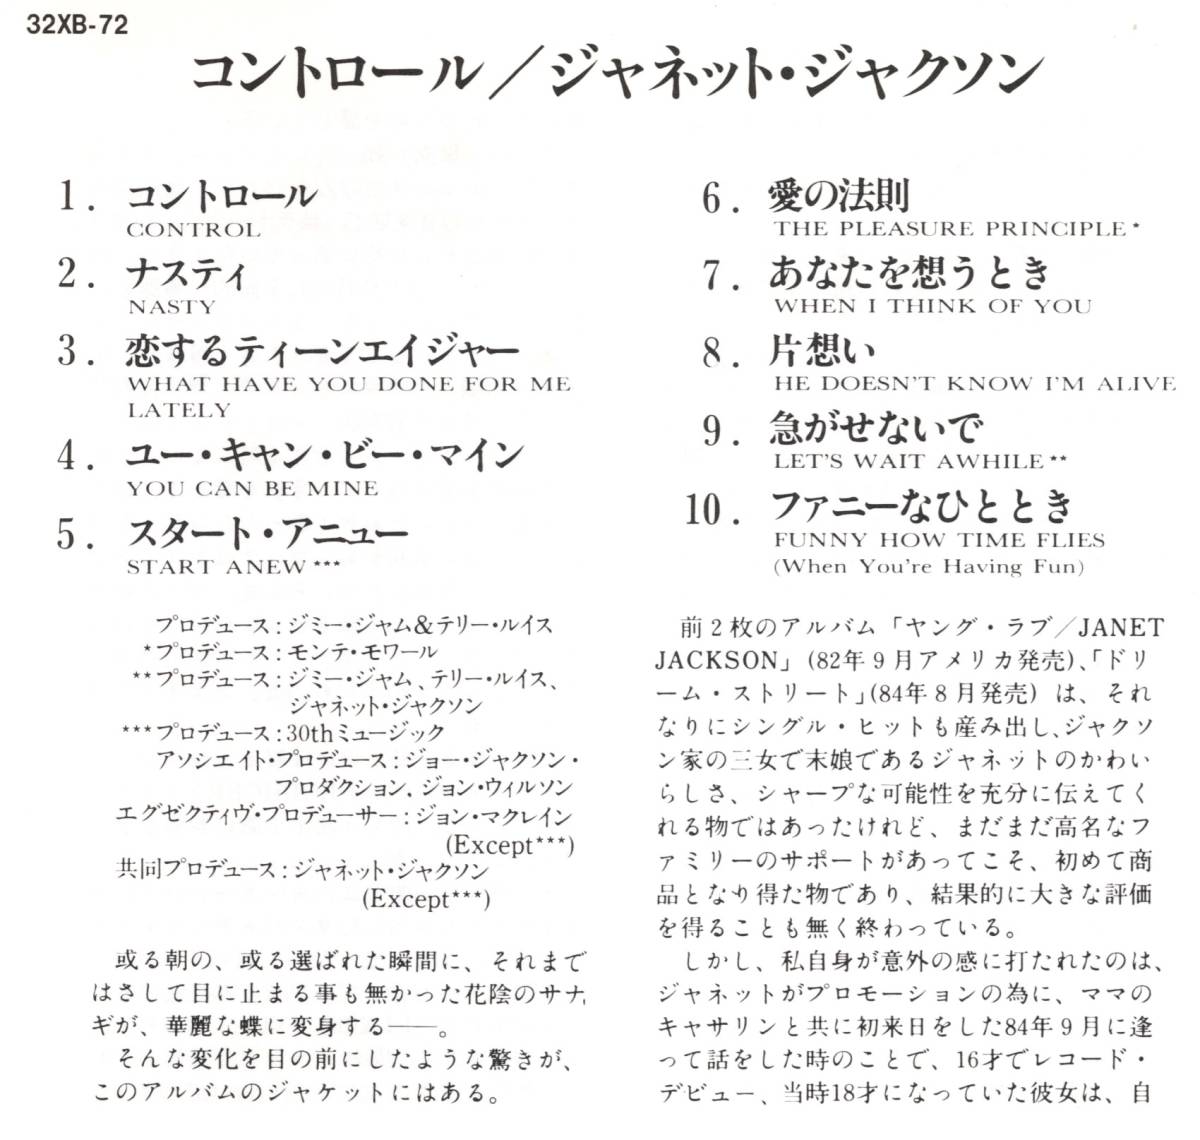 レア初回盤CD☆ジャネット・ジャクソン／コントロール＋1（32XB-72） スタート・アニュー（START ANEW）収録、JANET JACKSON／CONTROLの画像4